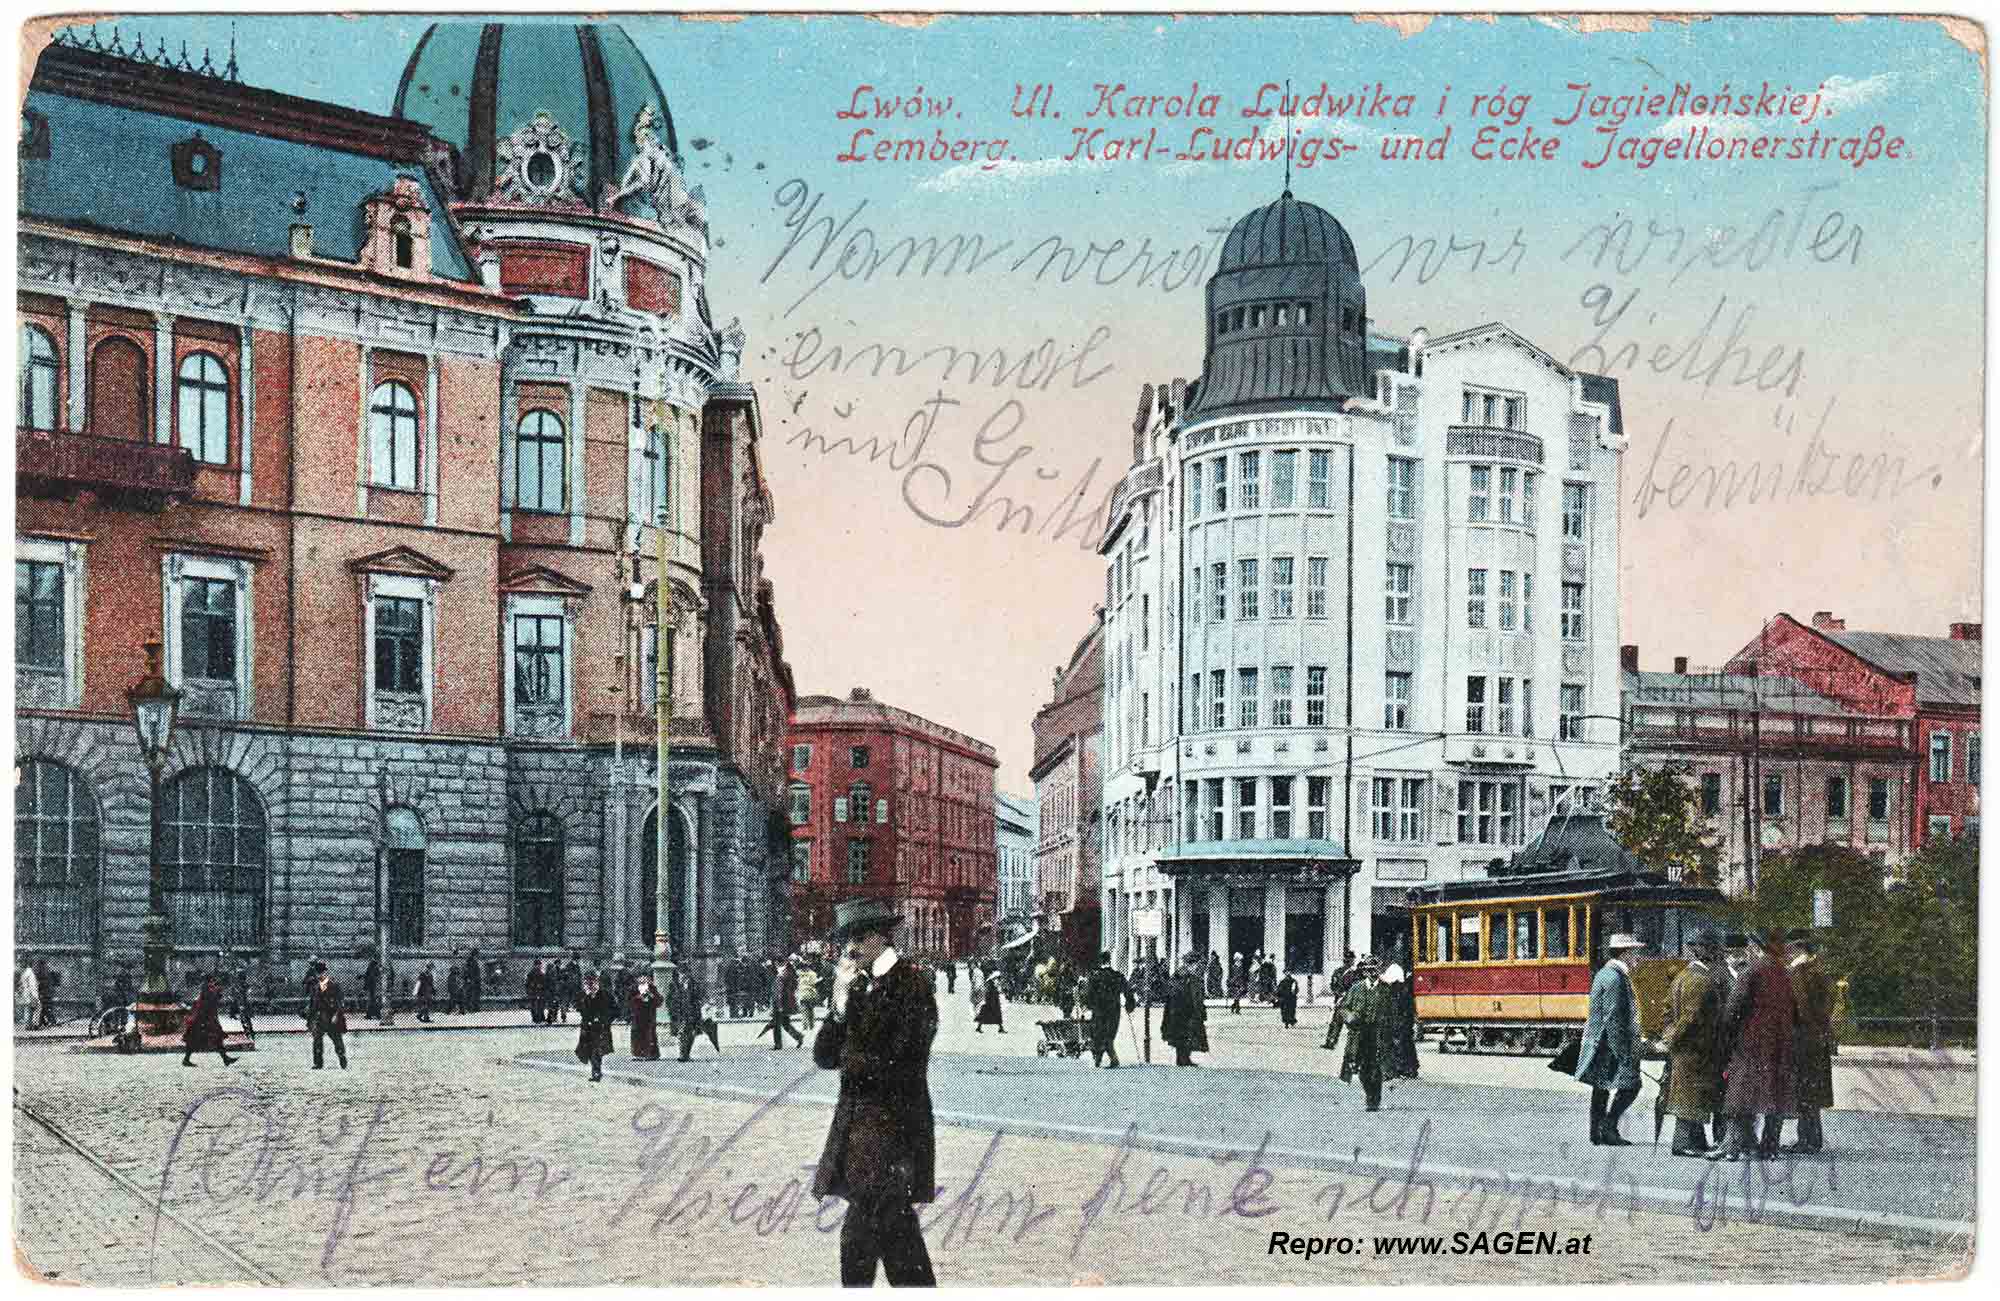 Lwiw (Lemberg), Karl Ludwigs- und Ecke Jagellonerstraße um 1915